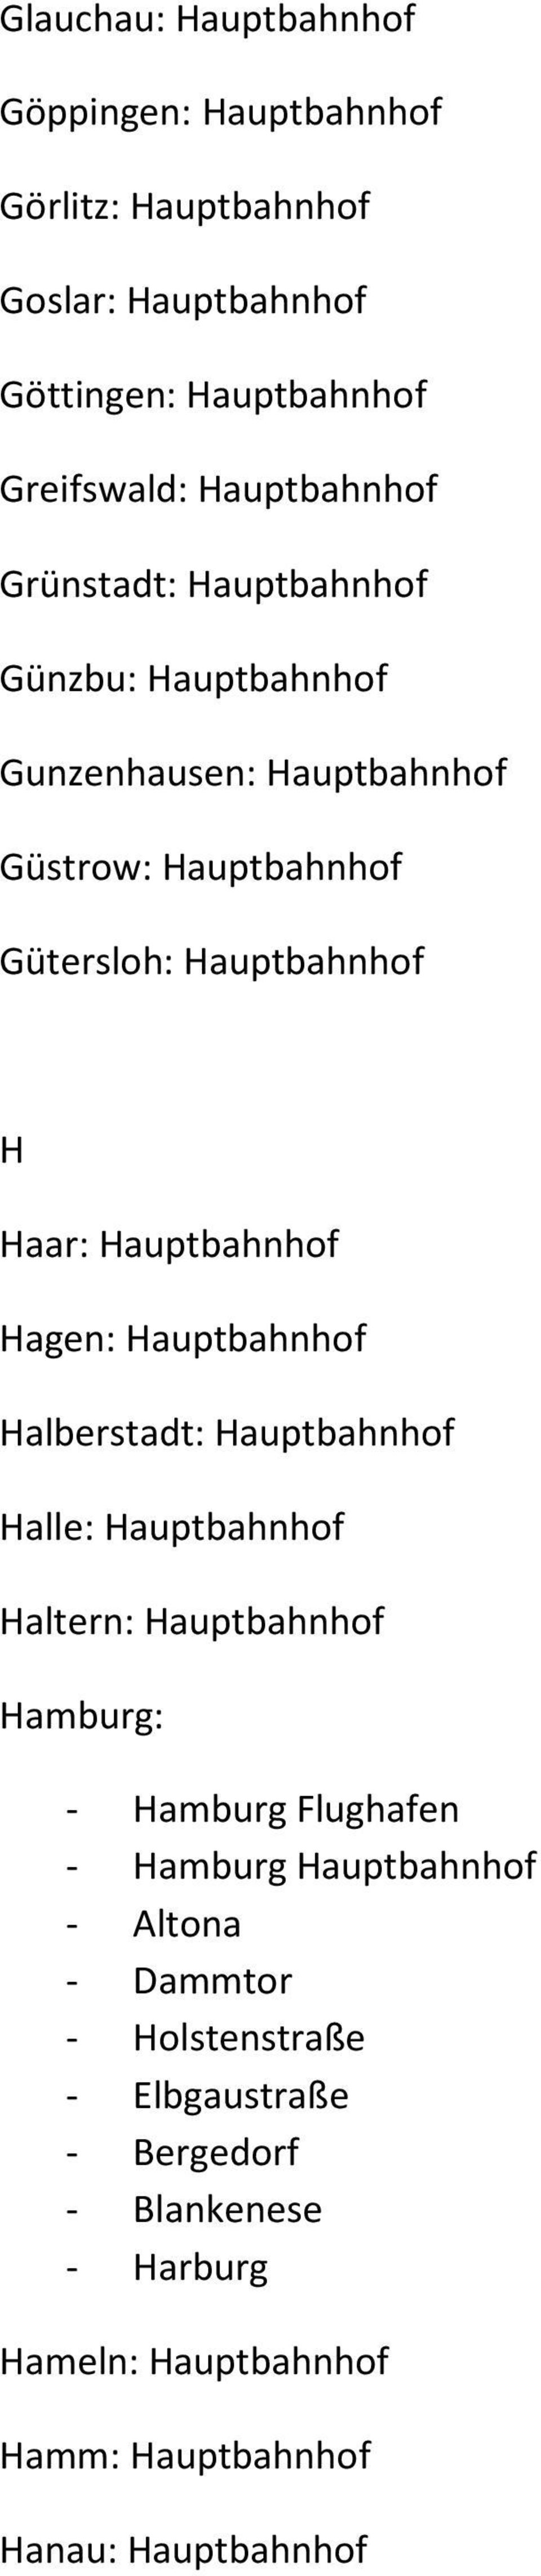 Hagen: Hauptbahnhof Halberstadt: Hauptbahnhof Halle: Hauptbahnhof Haltern: Hauptbahnhof Hamburg: - Hamburg Flughafen - Hamburg Hauptbahnhof